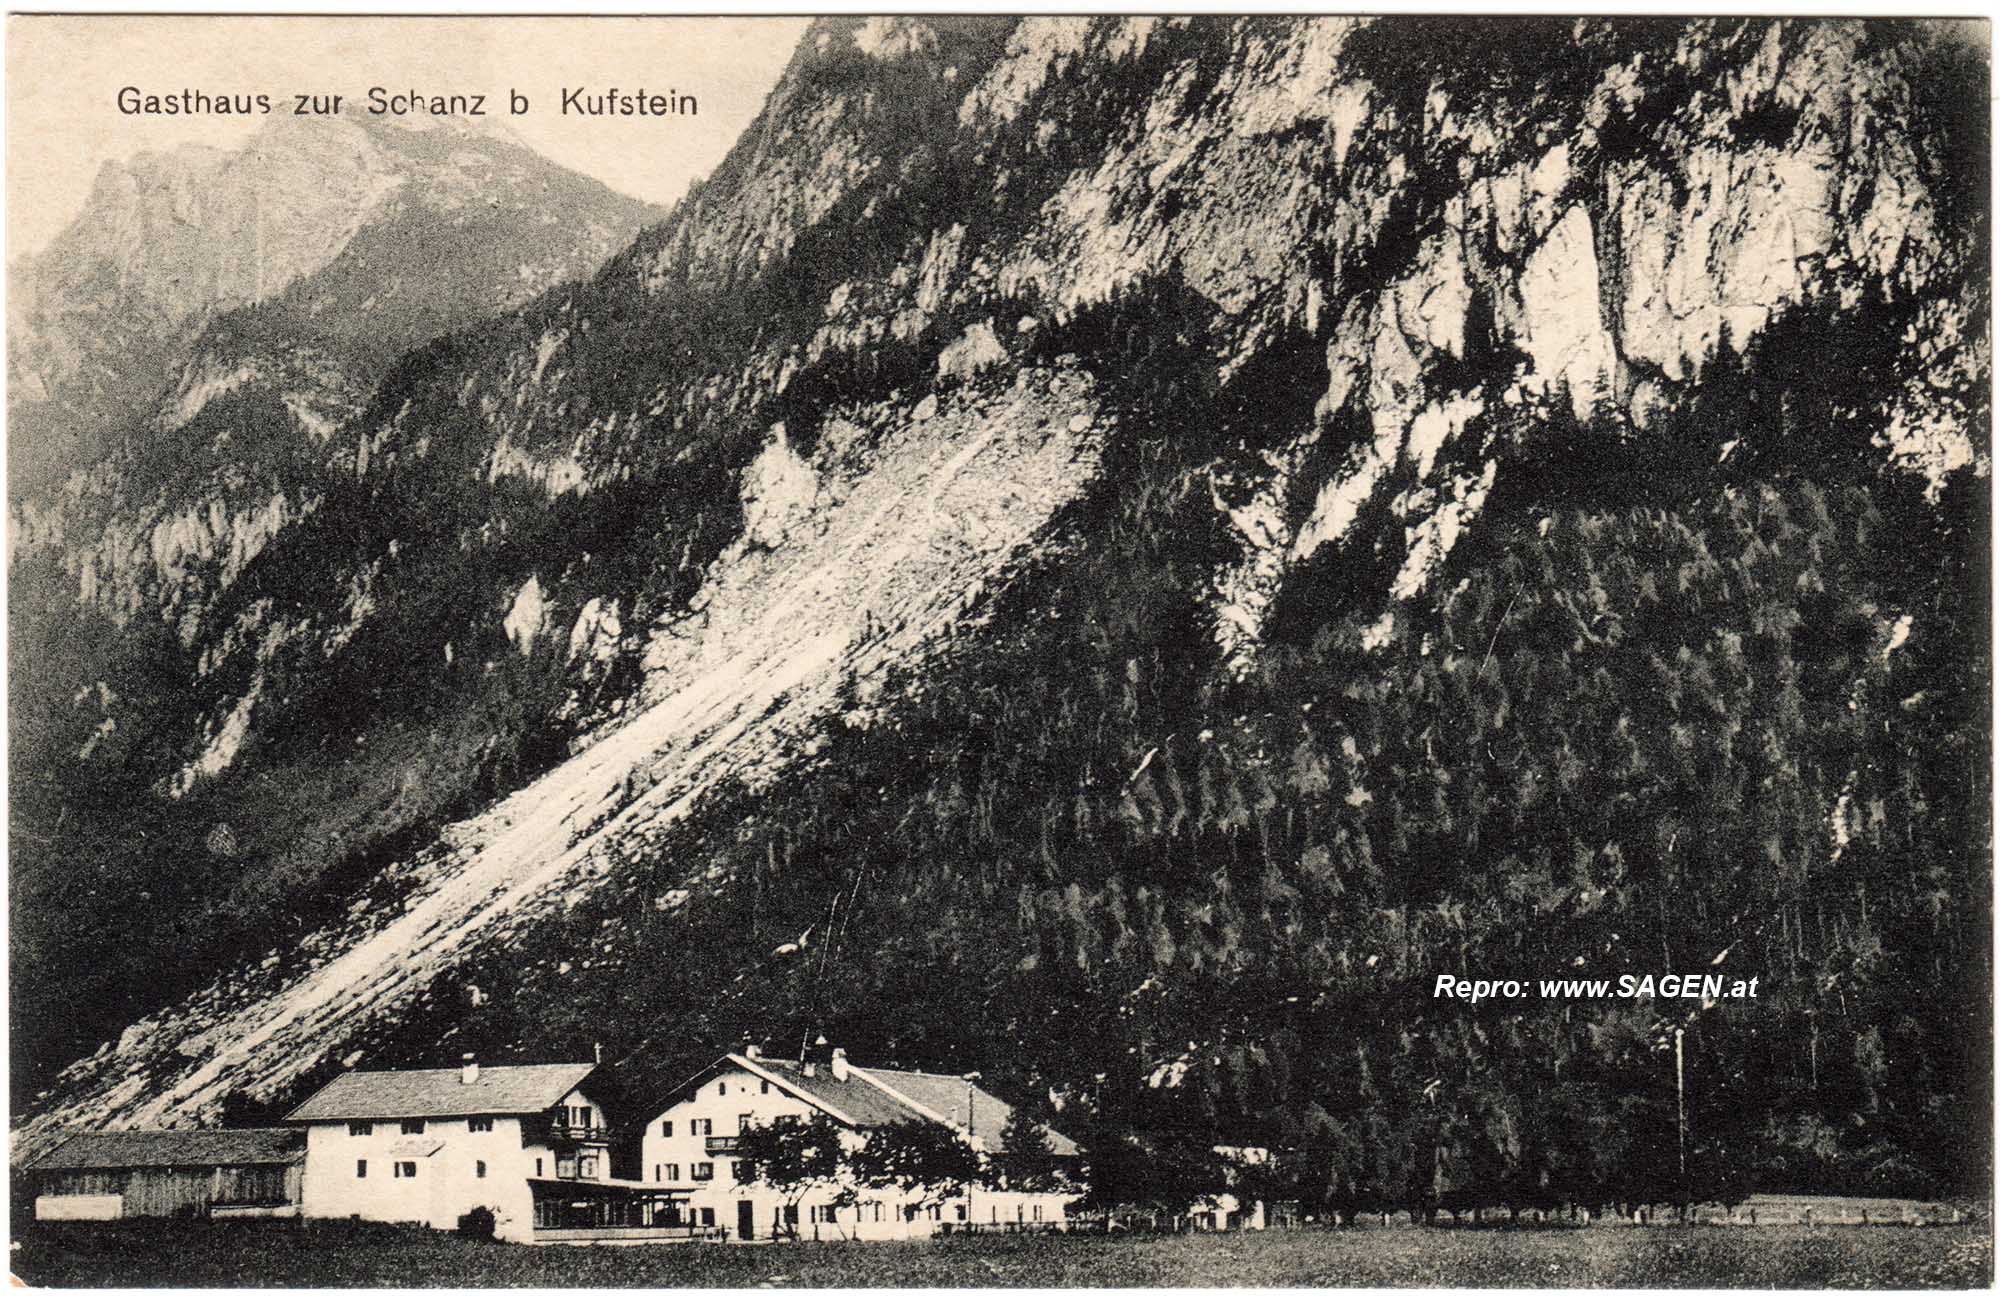 Gasthaus zur Schanz bei Kufstein